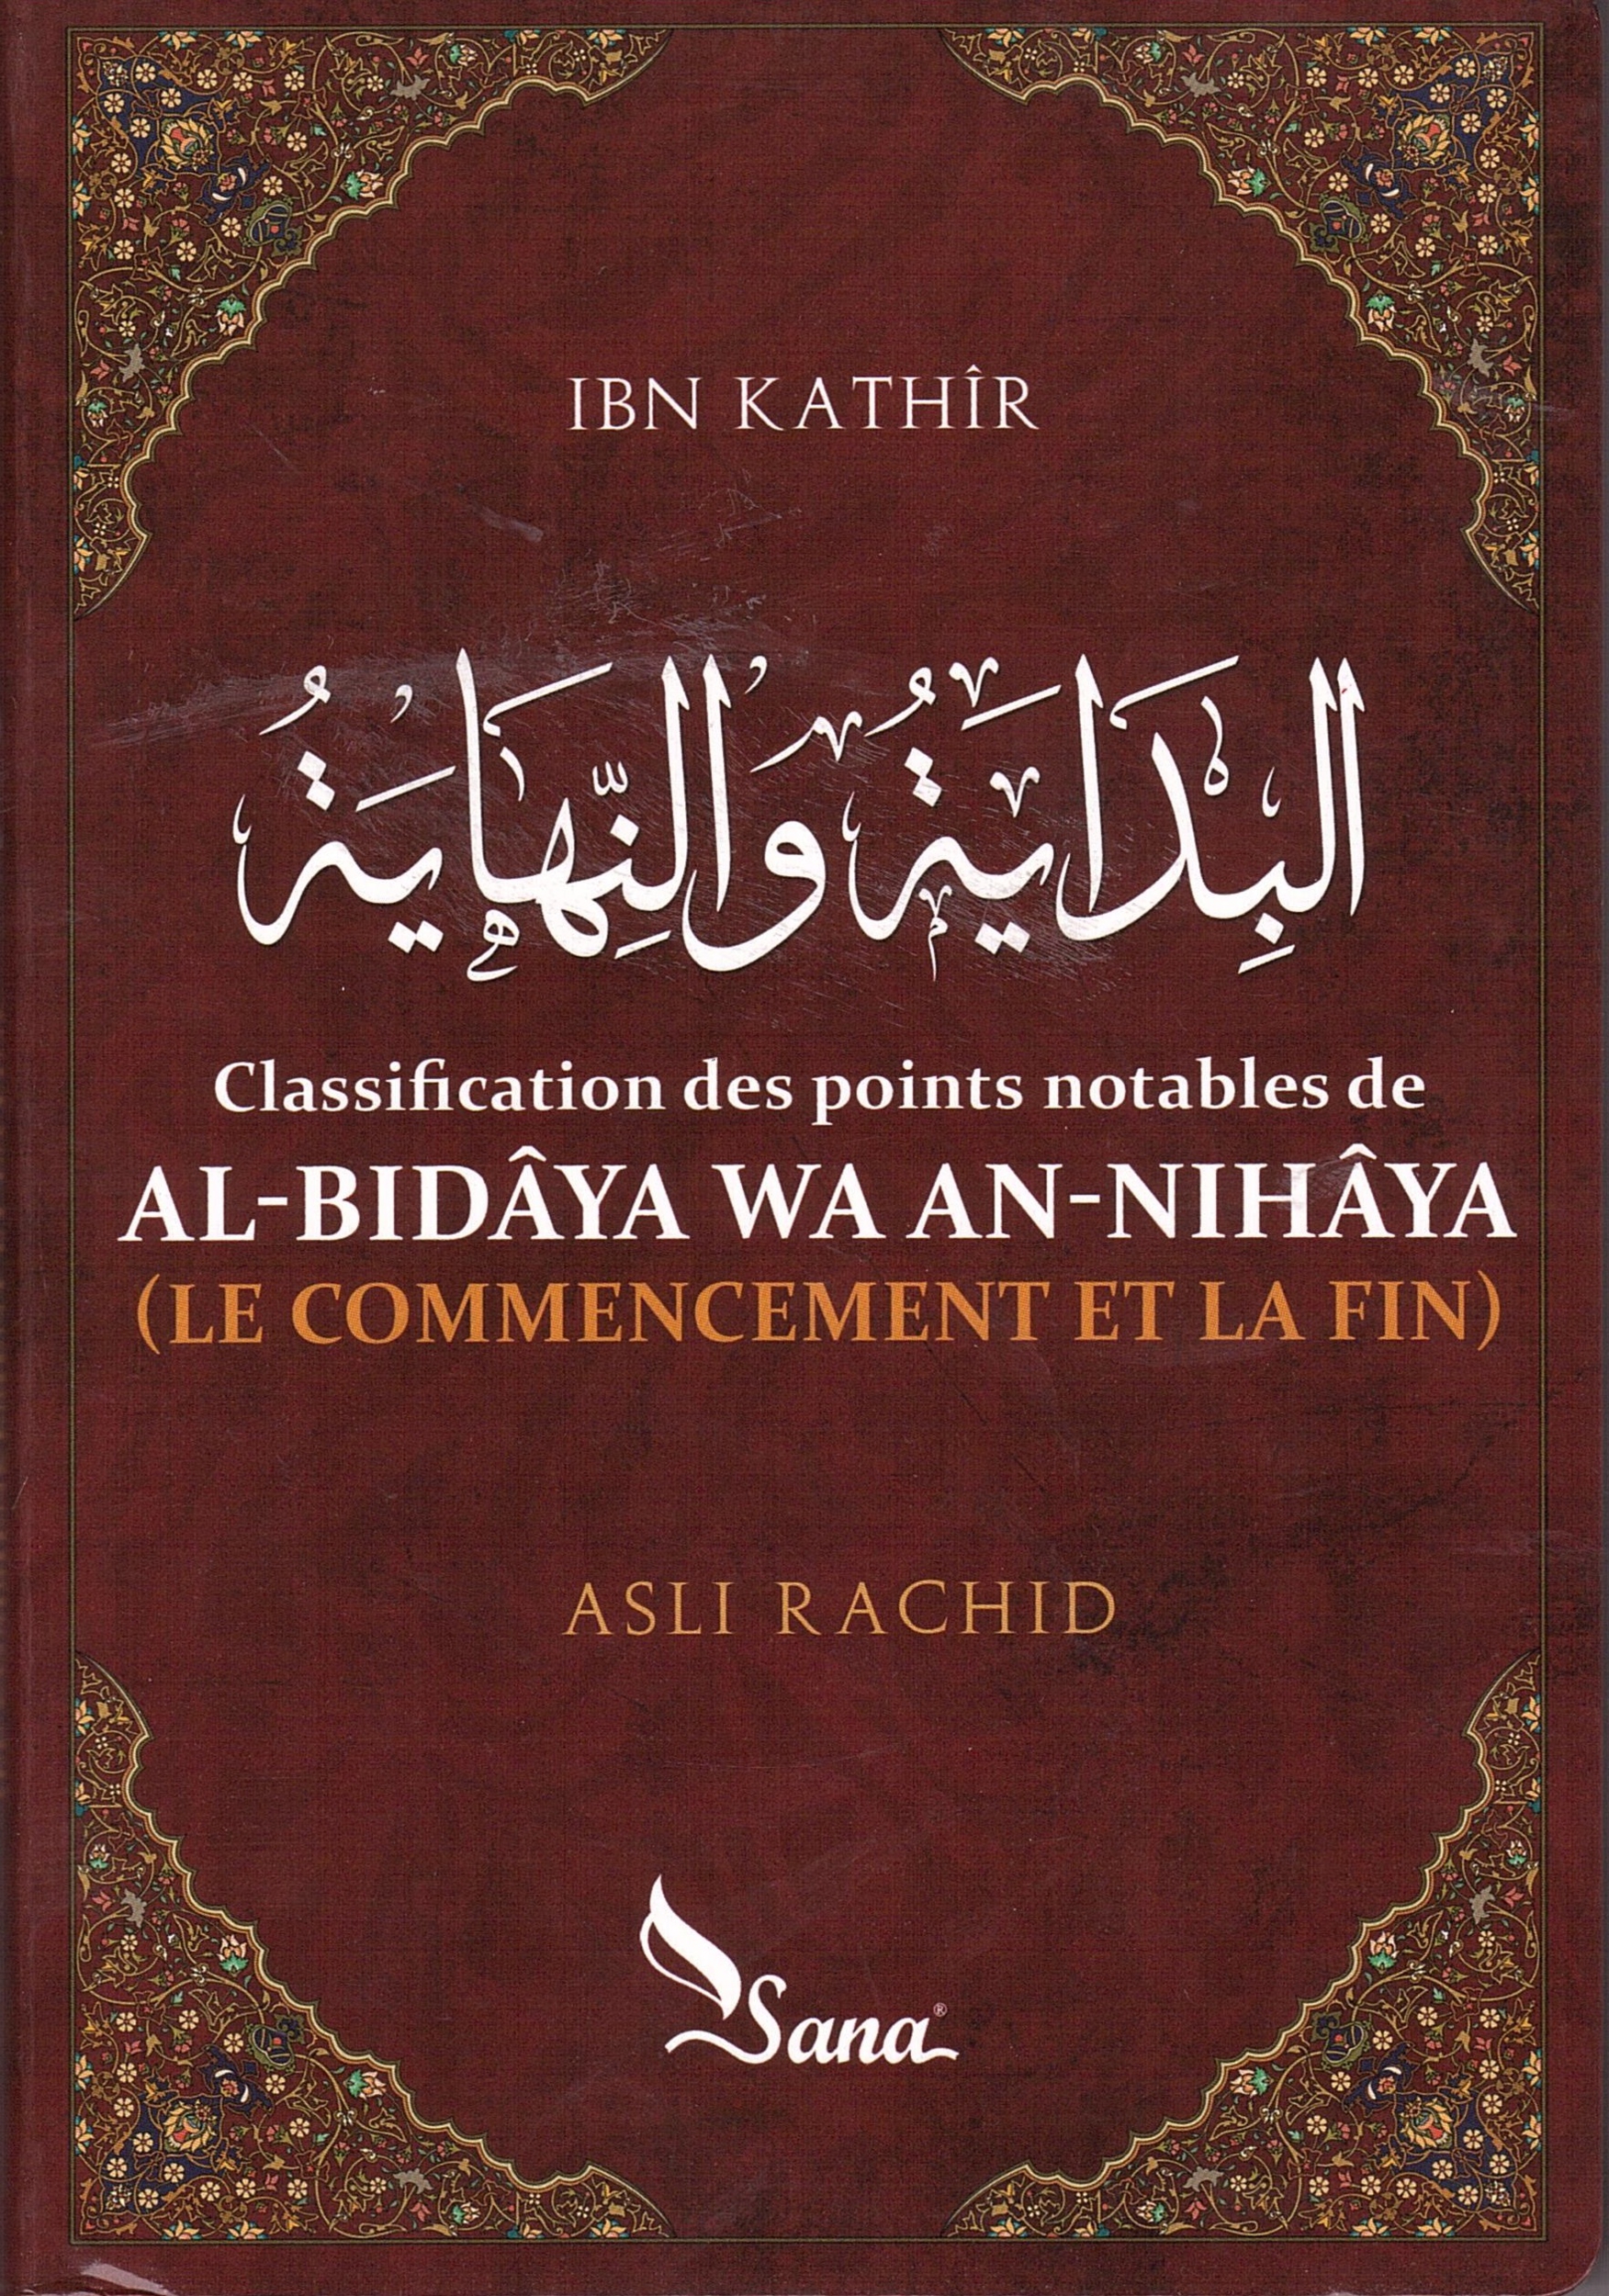 al-bidaya wa an-nihaya ibn kathir asli rachid 001